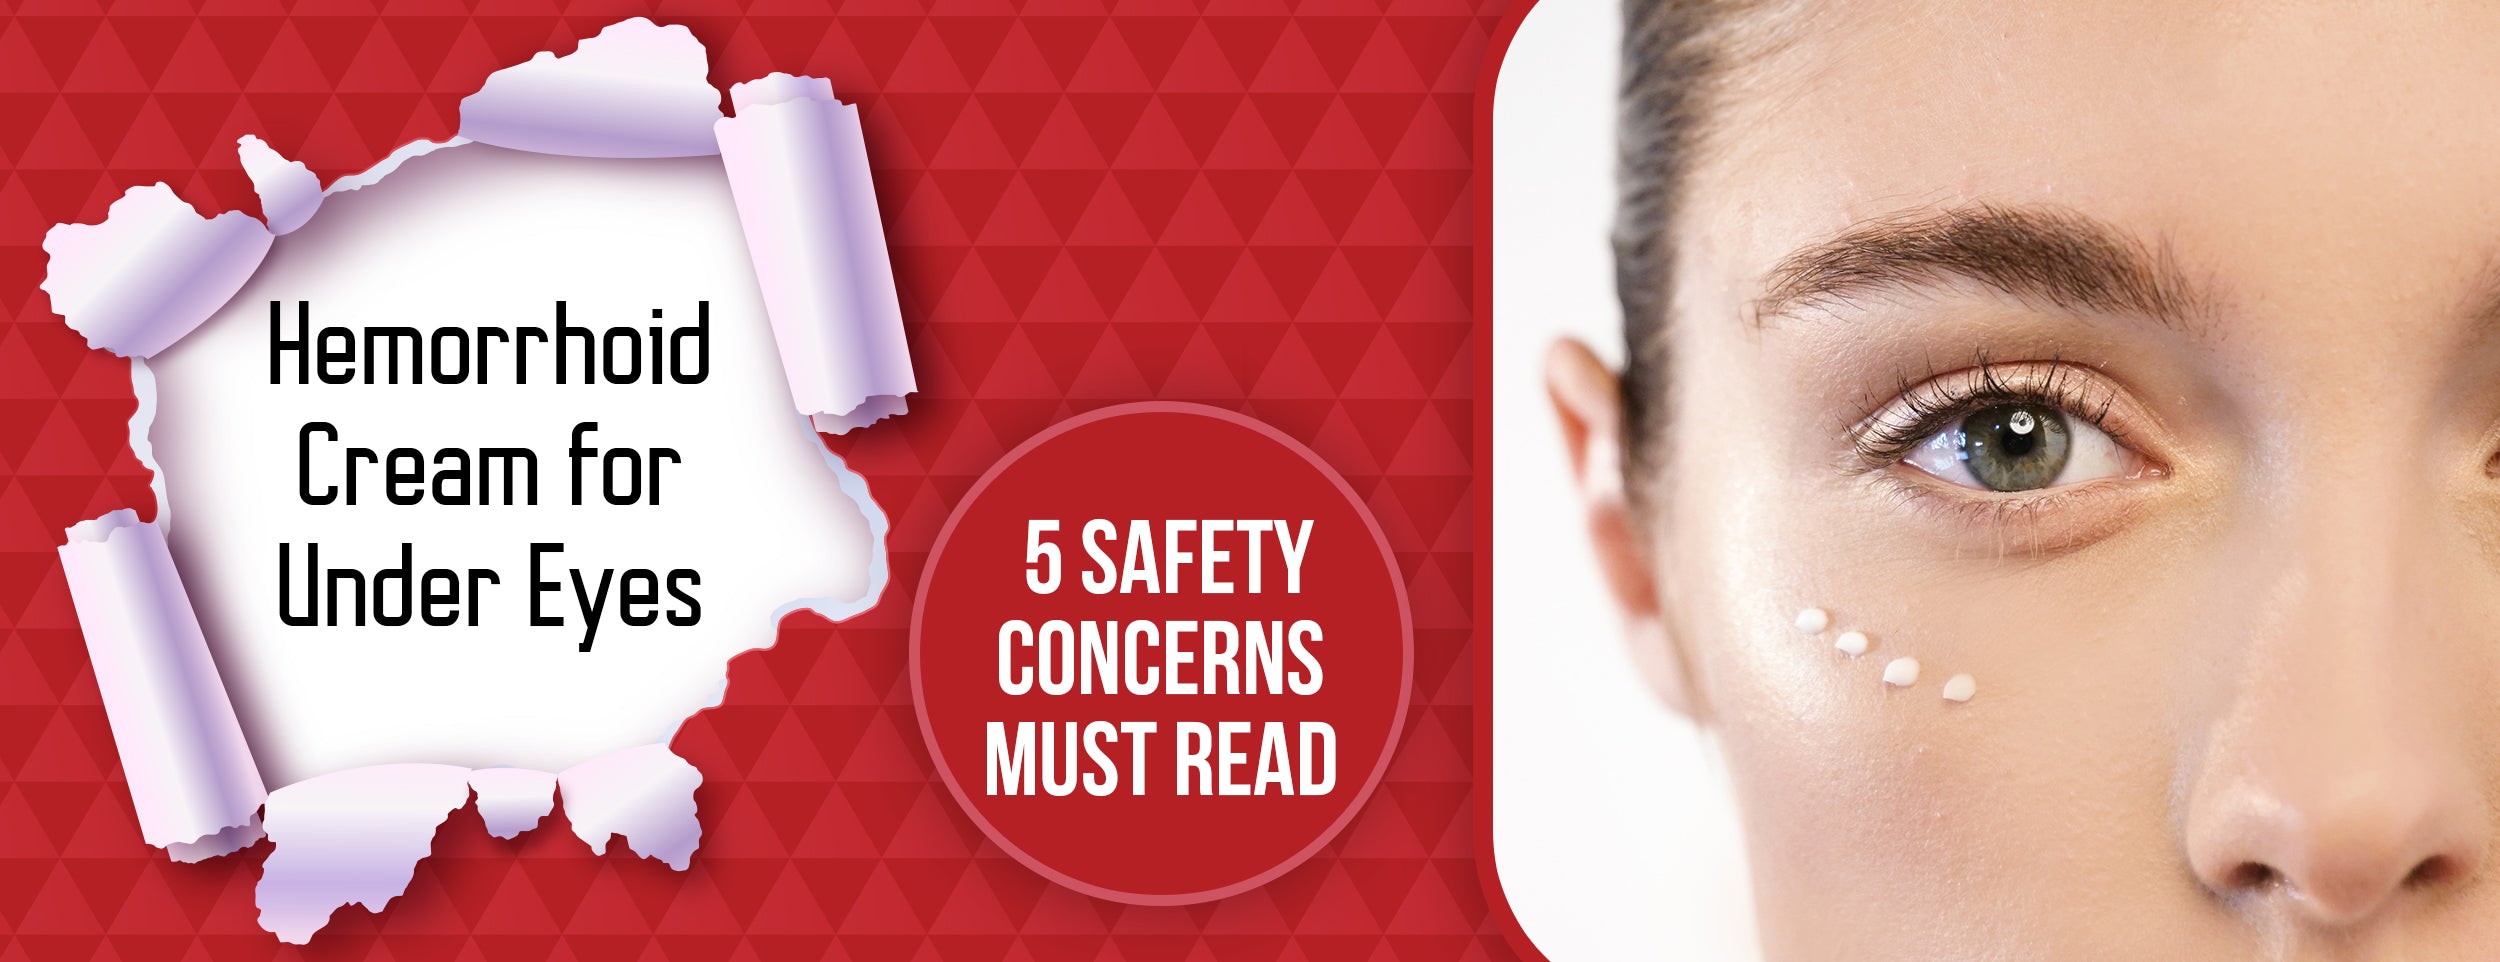 5 Safety Concerns about Hemorrhoid Cream for Under Eyes